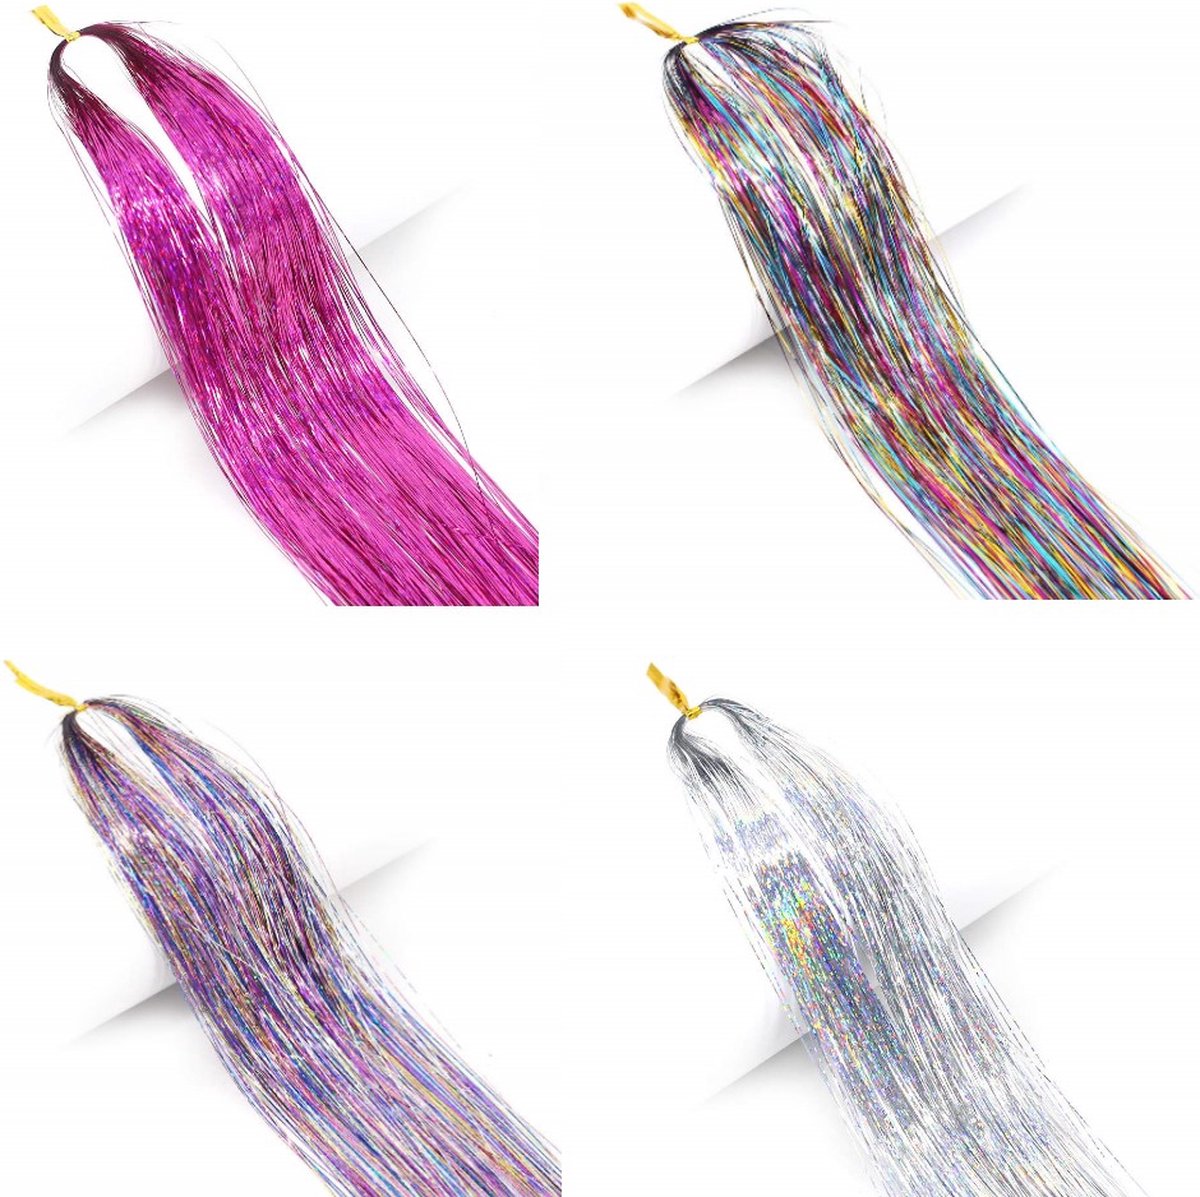 Hair tinsel - Haar glitter - Glitter extensions - Hair tinsel glitter - Haar tinsel - Hair tinsels - Haar glitter festival - 120-150 stuks per kleur - 4 verschillende kleuren